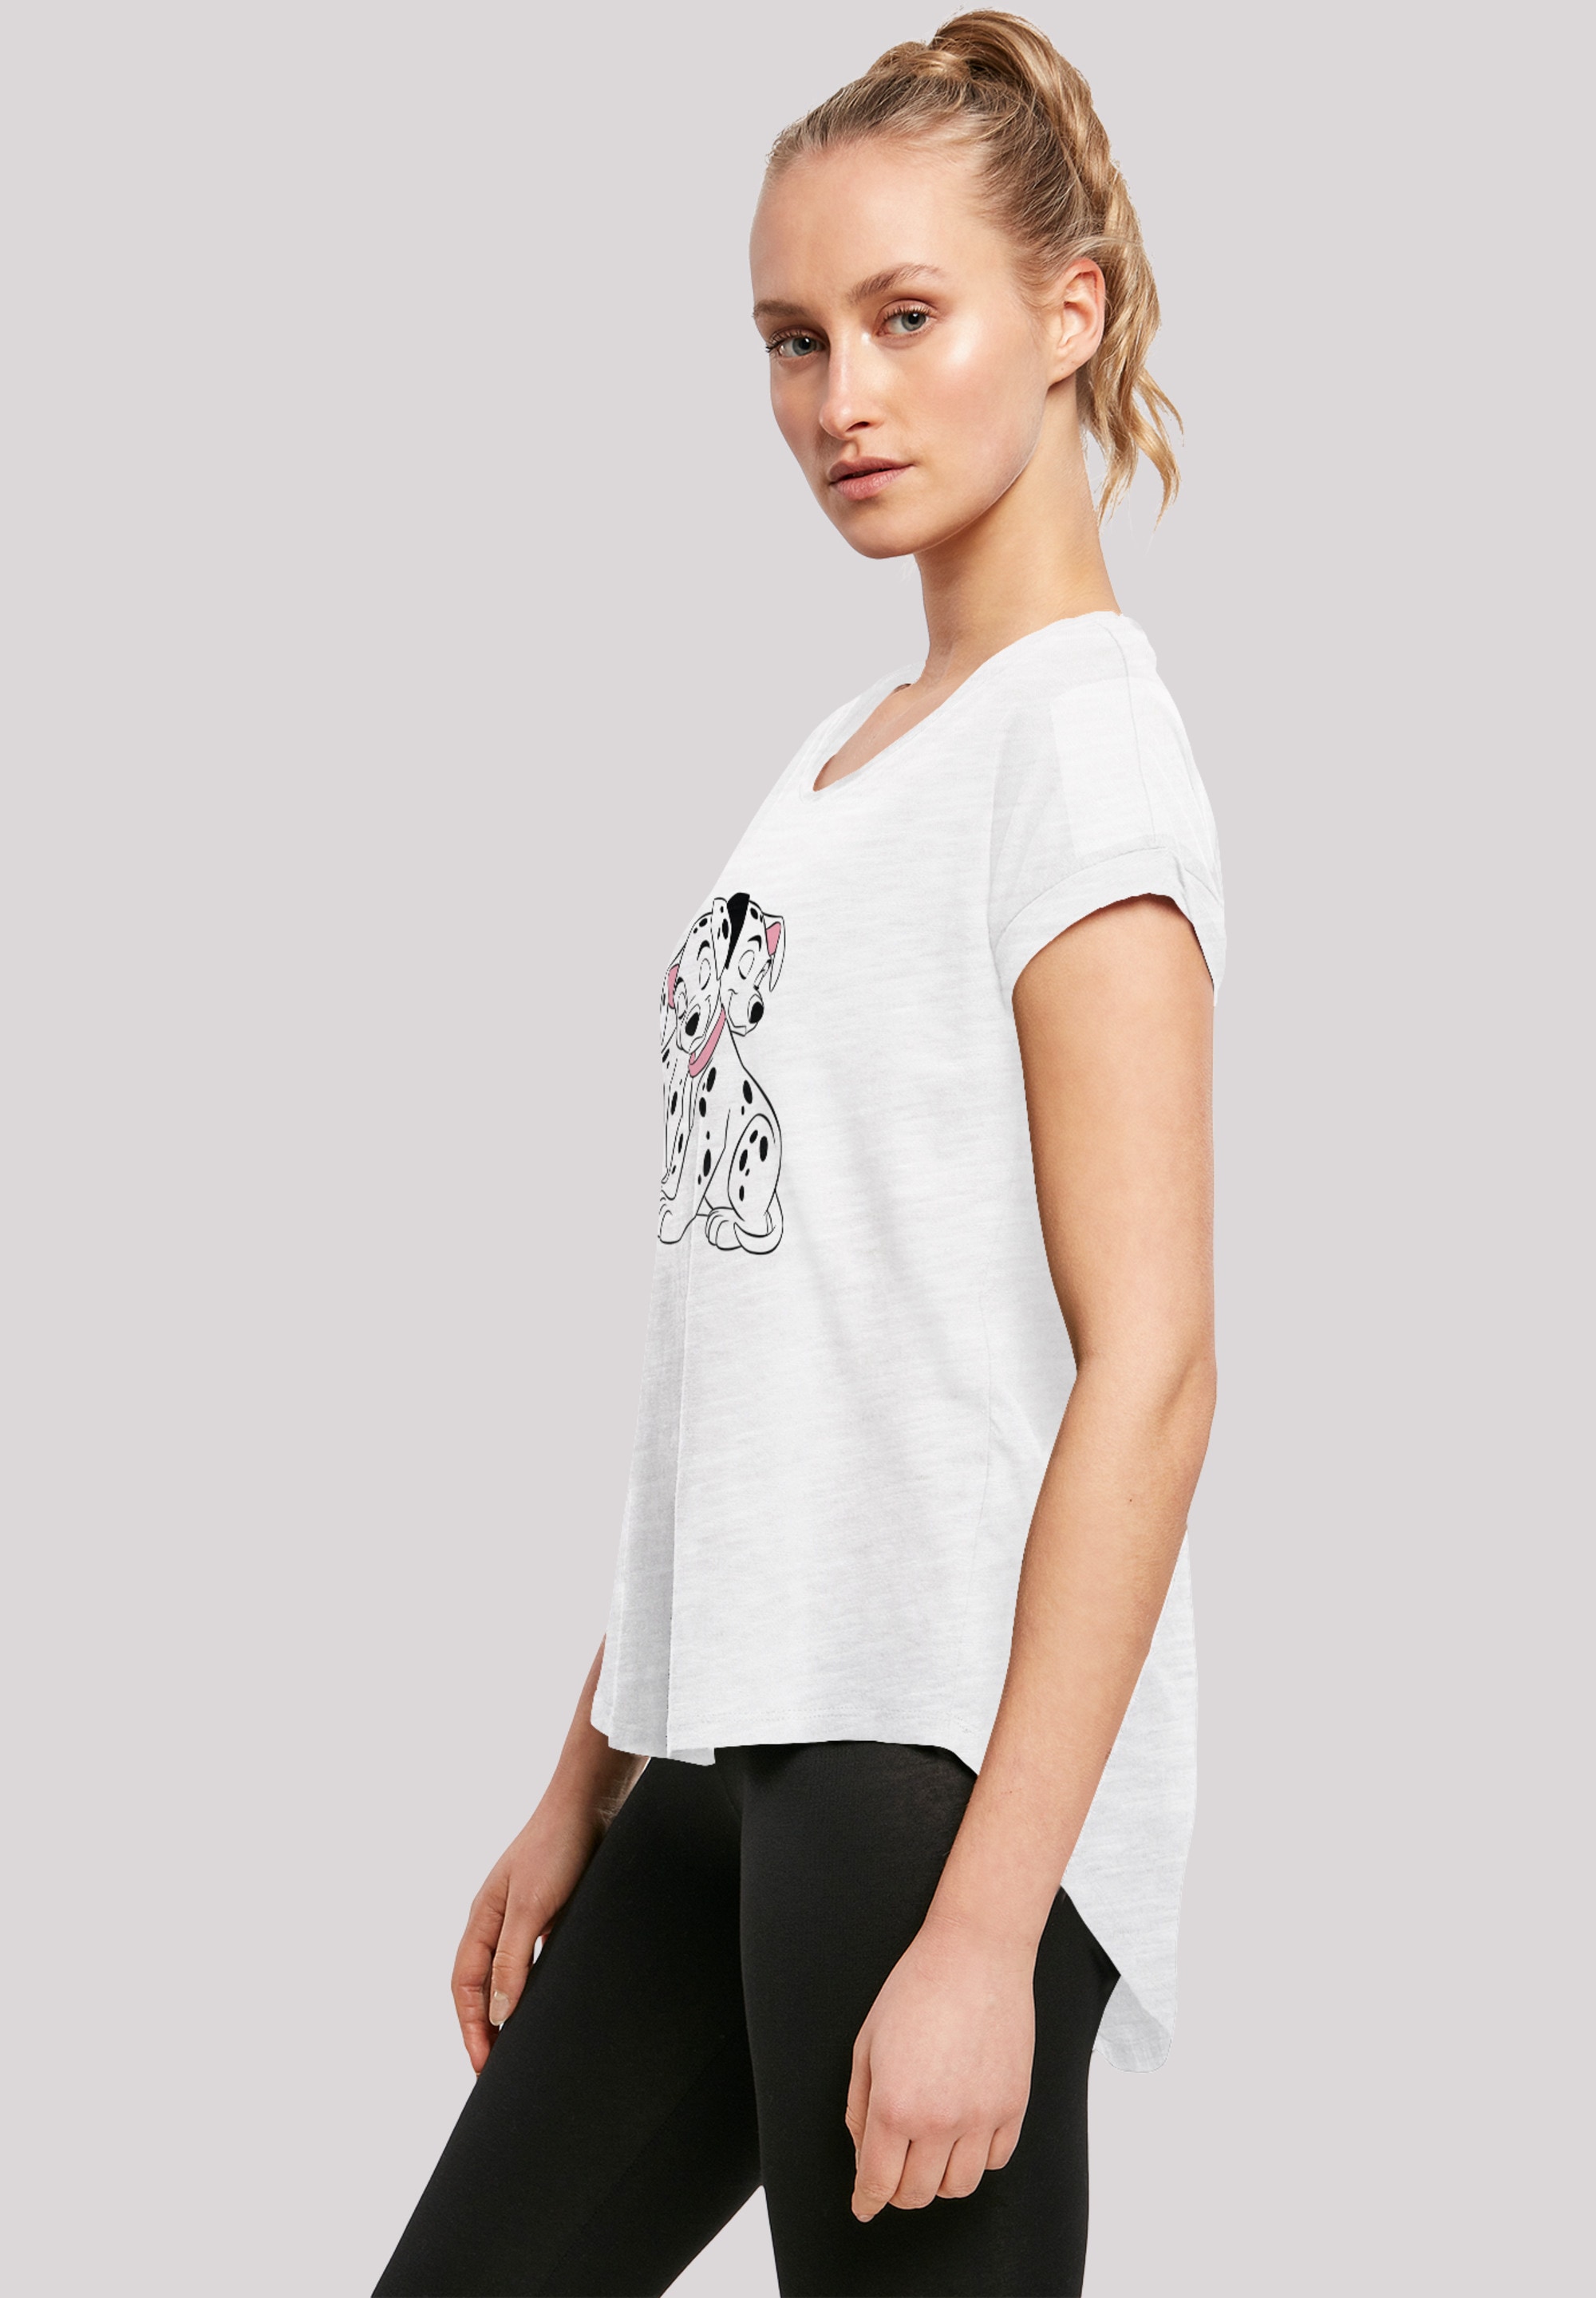 F4NT4STIC T-Shirt »101 Dalmatiner Puppy Love«, Print